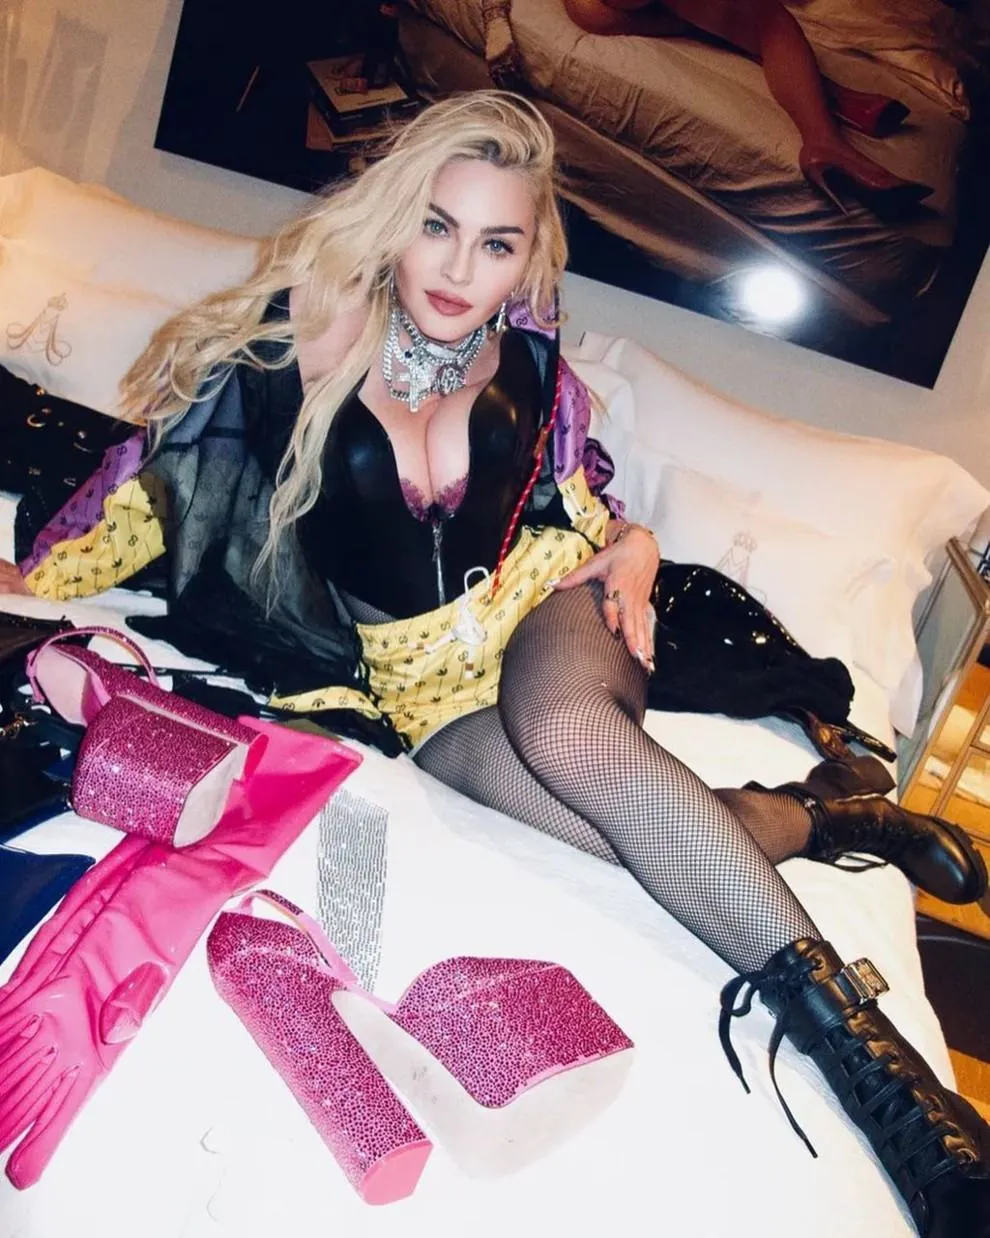 Мадонна одела корсет от украинского бренда